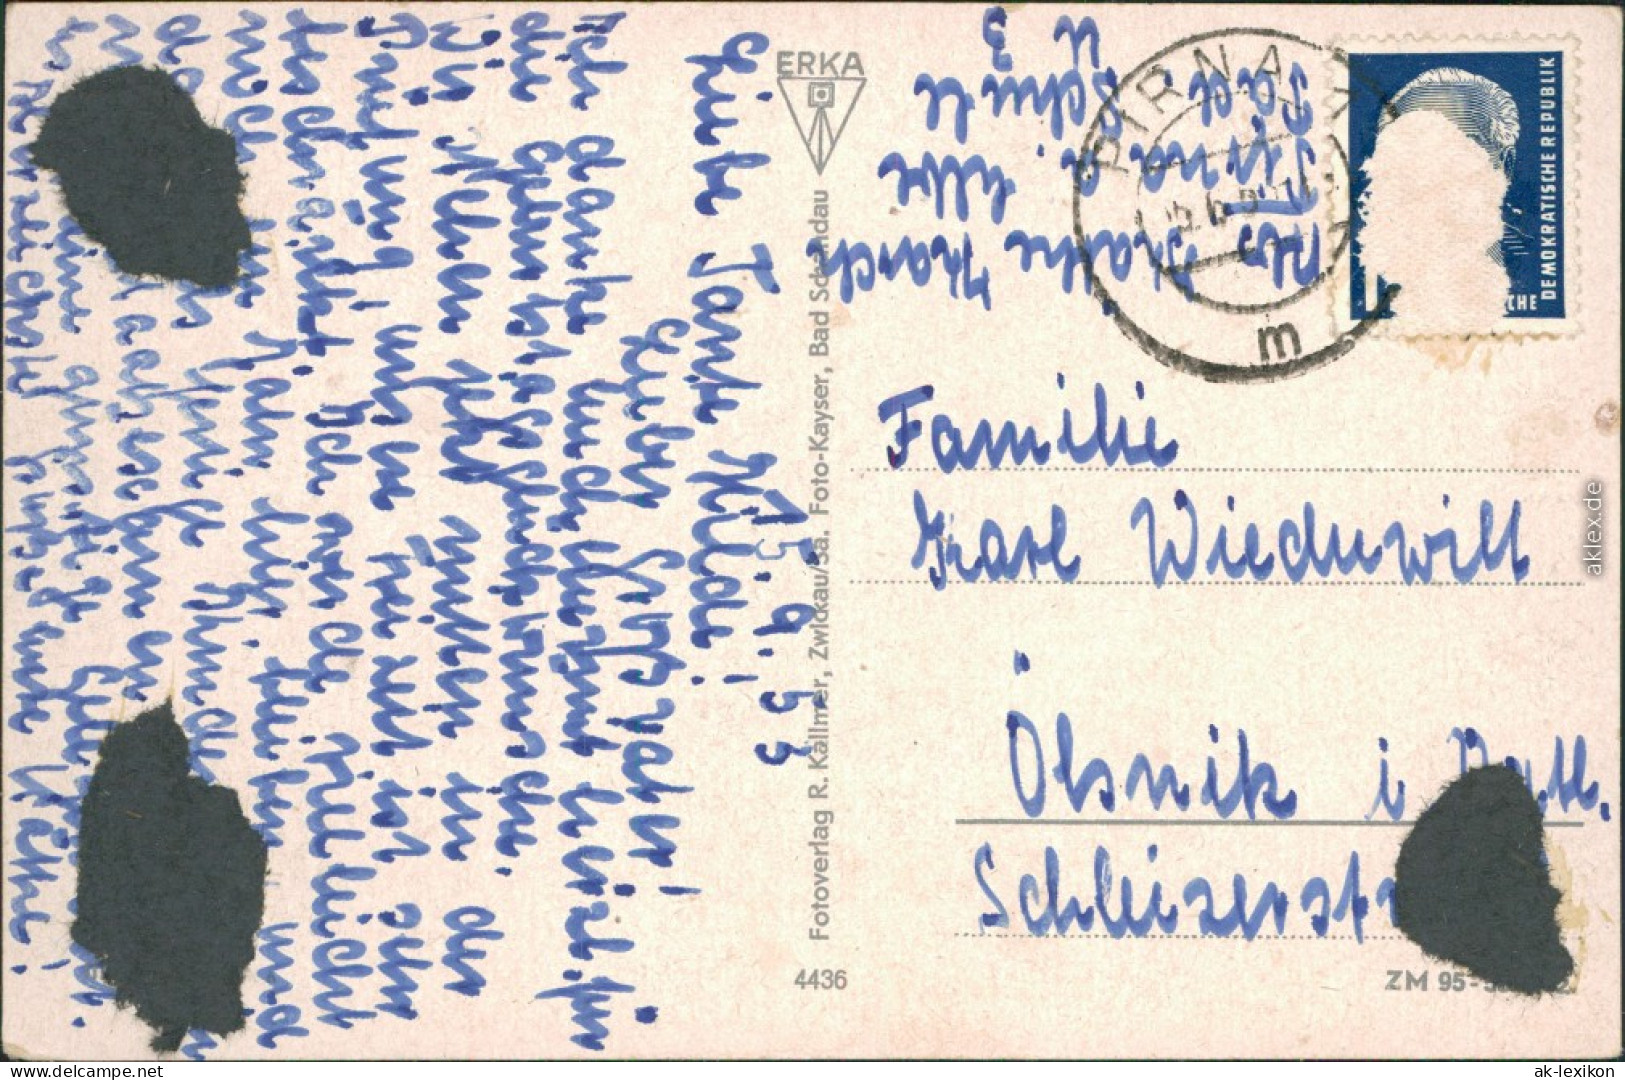 Ansichtskarte Postelwitz-Bad Schandau Straße, Sieben-Brüder-Häuser 1953 - Bad Schandau